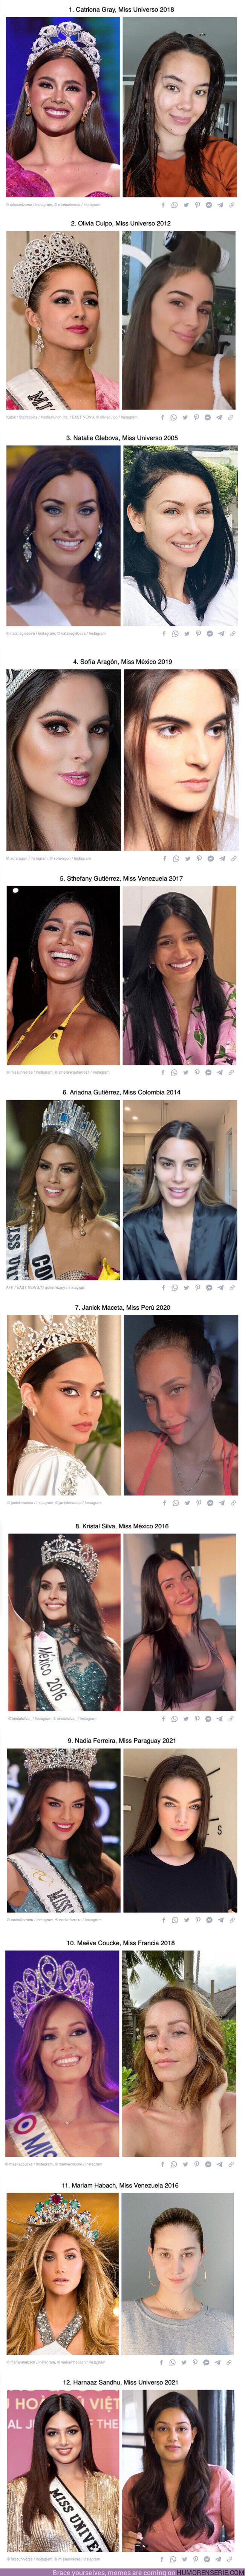 116312 - GALERÍA: 12 Candidatas de Miss Universo enseñaron su rostro sin maquillaje y merecen la corona a la belleza natural